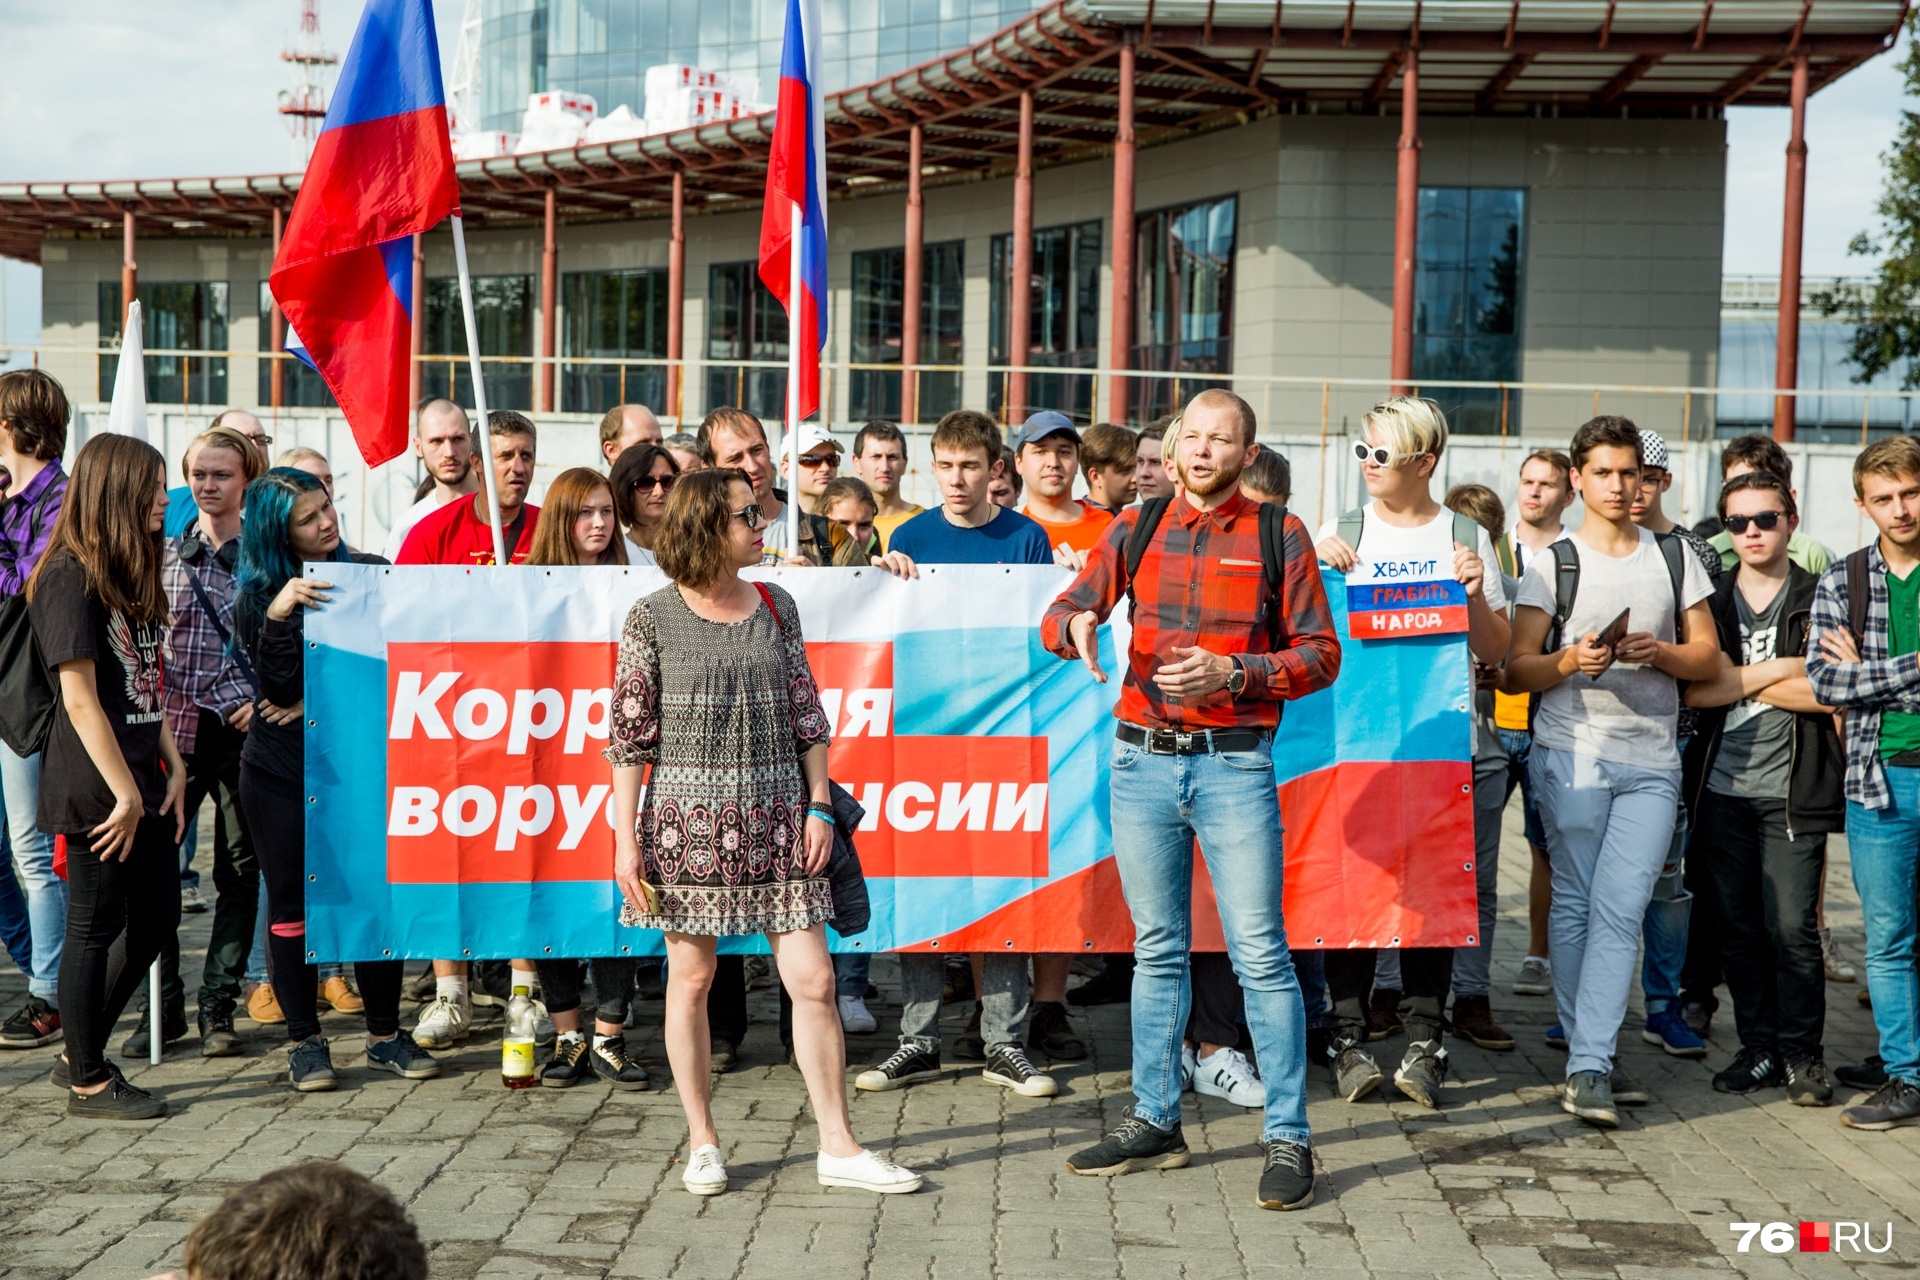 Организаторы акции из штаба Навального в Ярославле